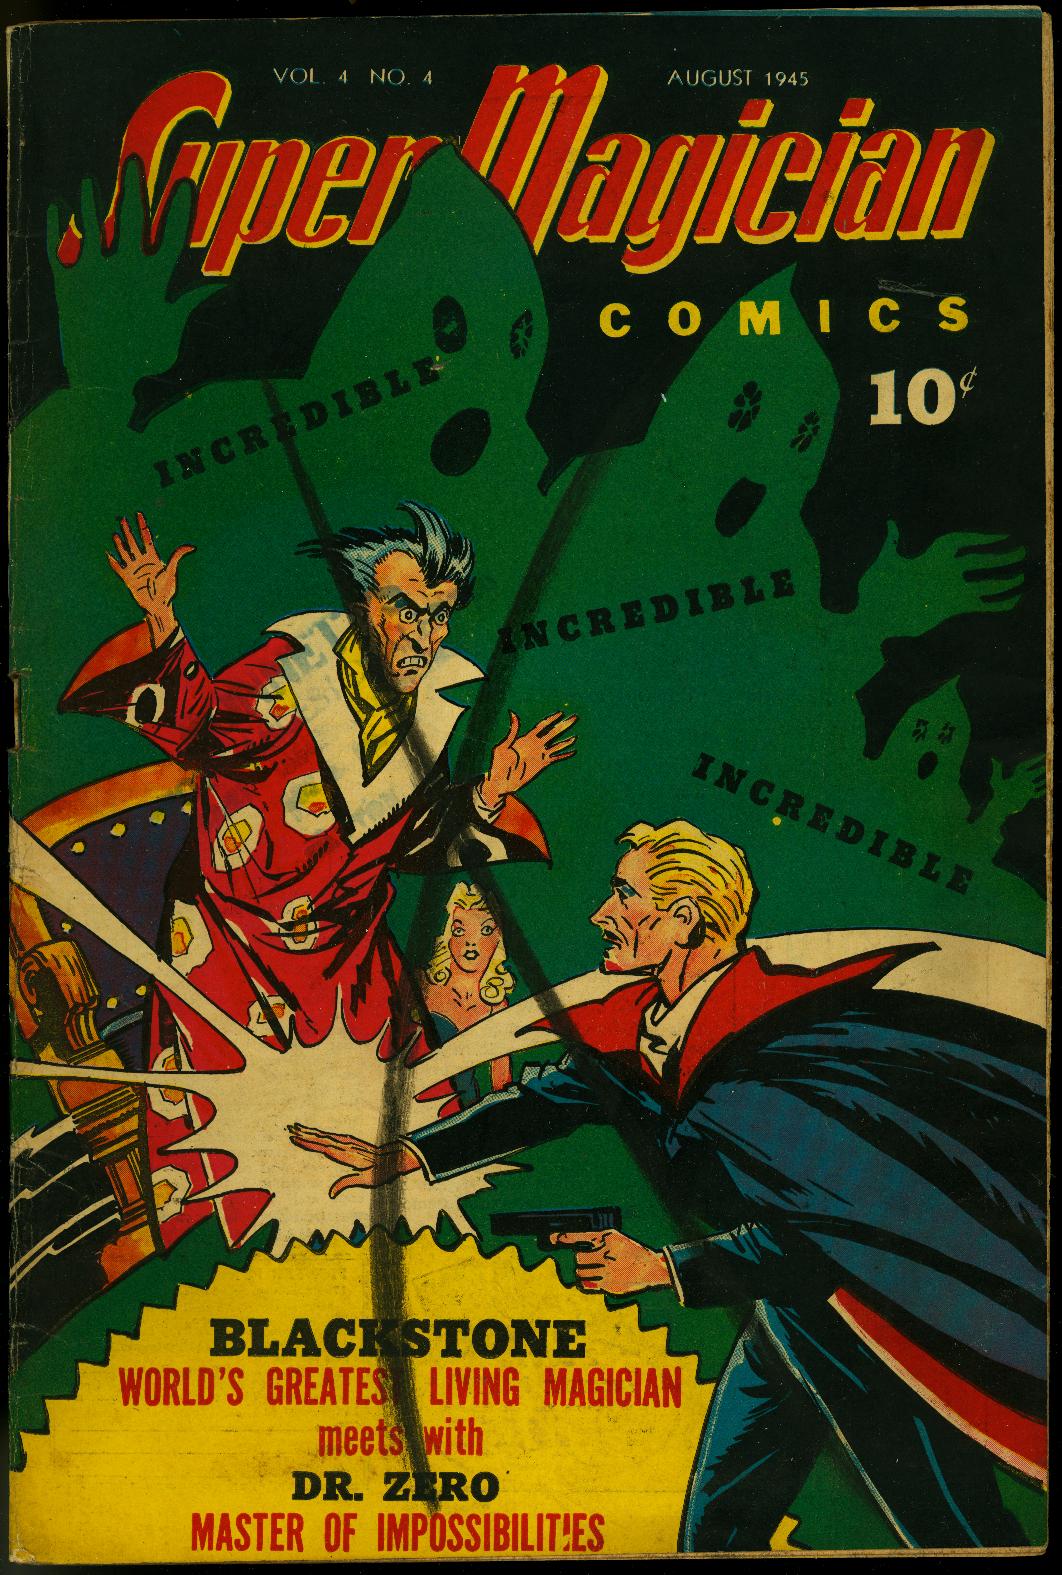 Super Magician Comics Vol 4 4 1945 Blackstone The Magician V Dr Zero 1945 Comic Dta Collectibles